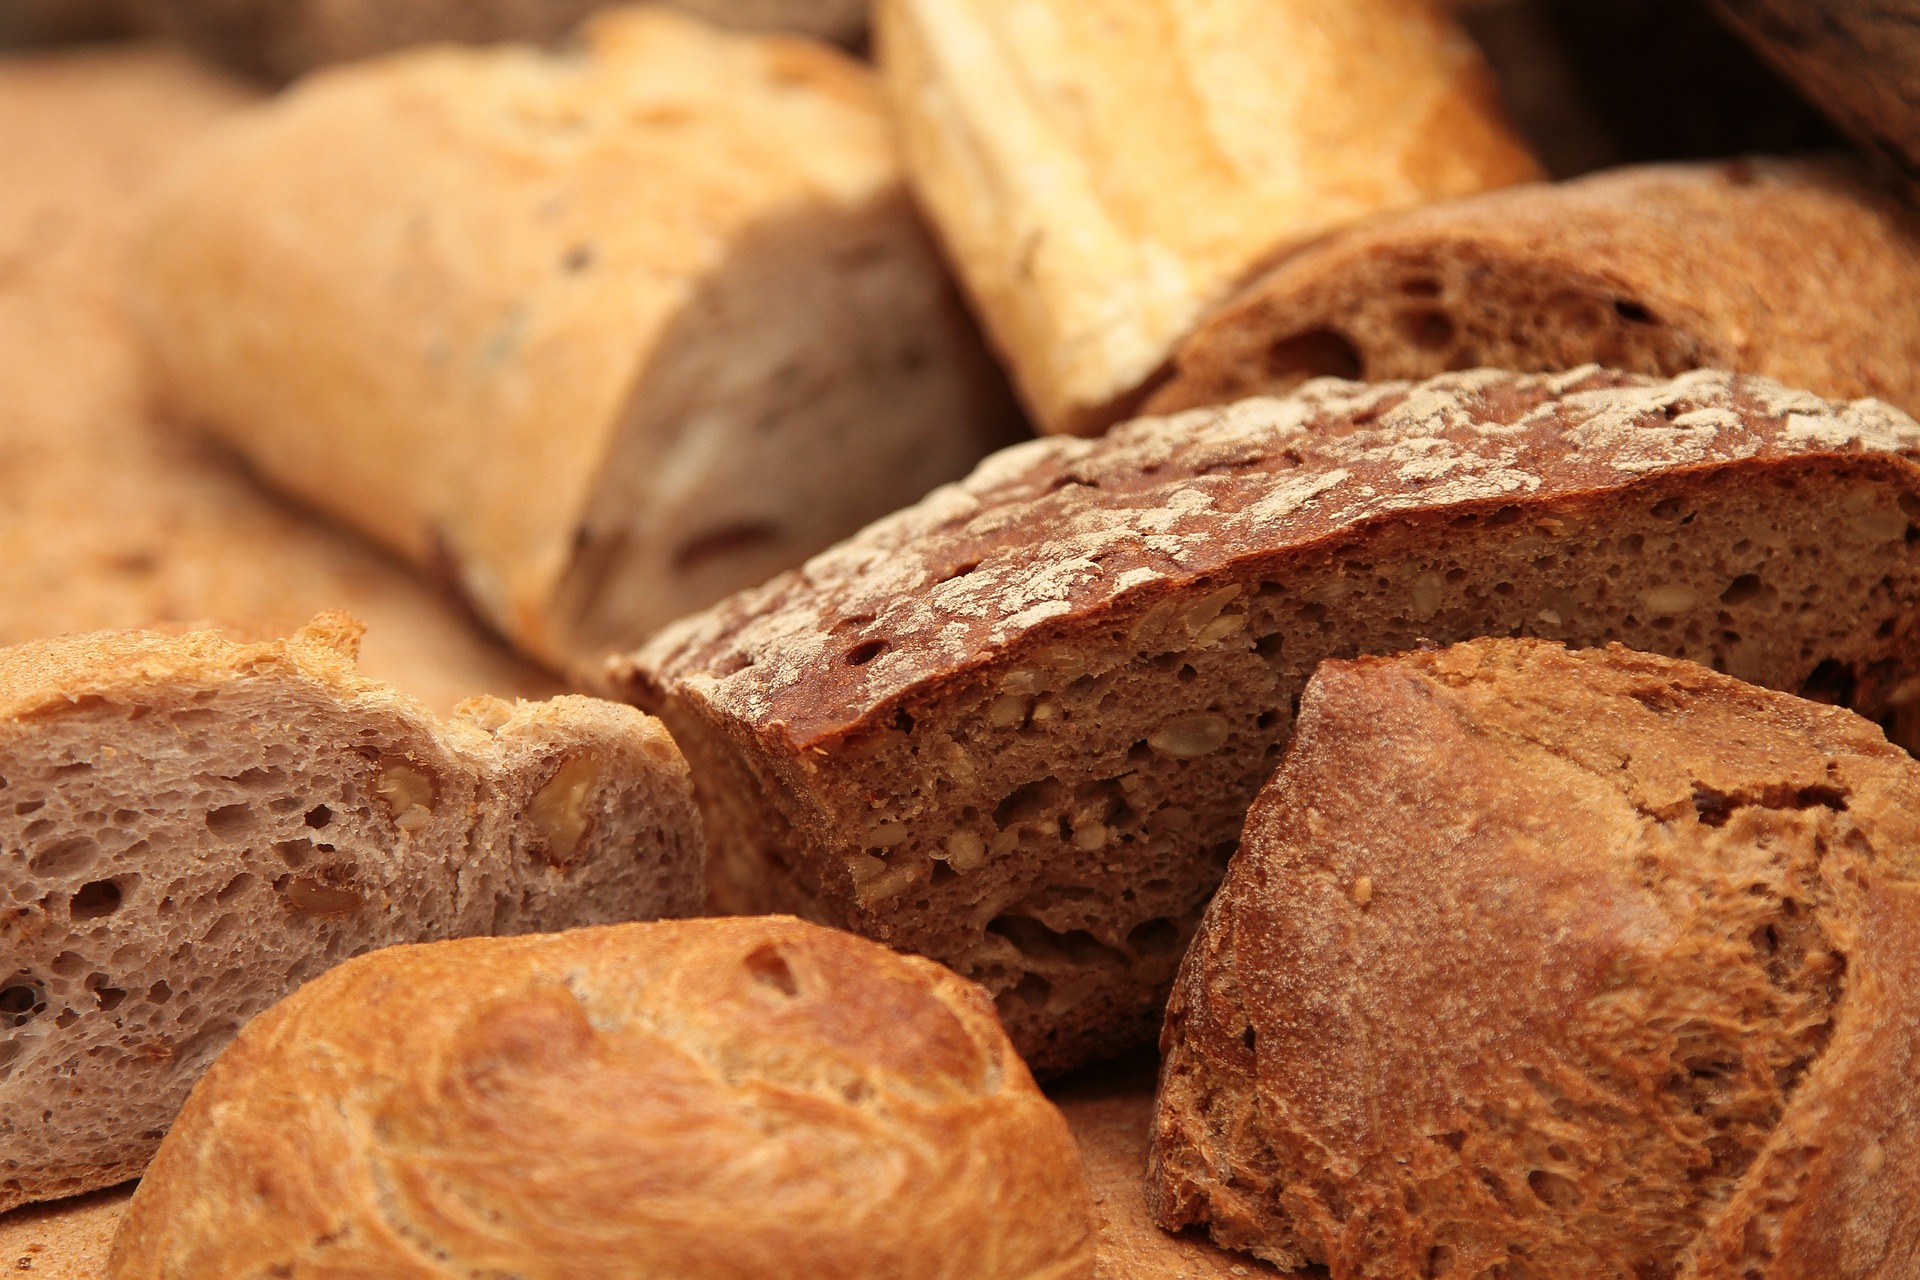 les boîtes à pain avec fermeture par enroulement les petits pains et les gâteaux les boîtes à pain Duston Boîte à pain parfaite pour le pain les boîtes à pain